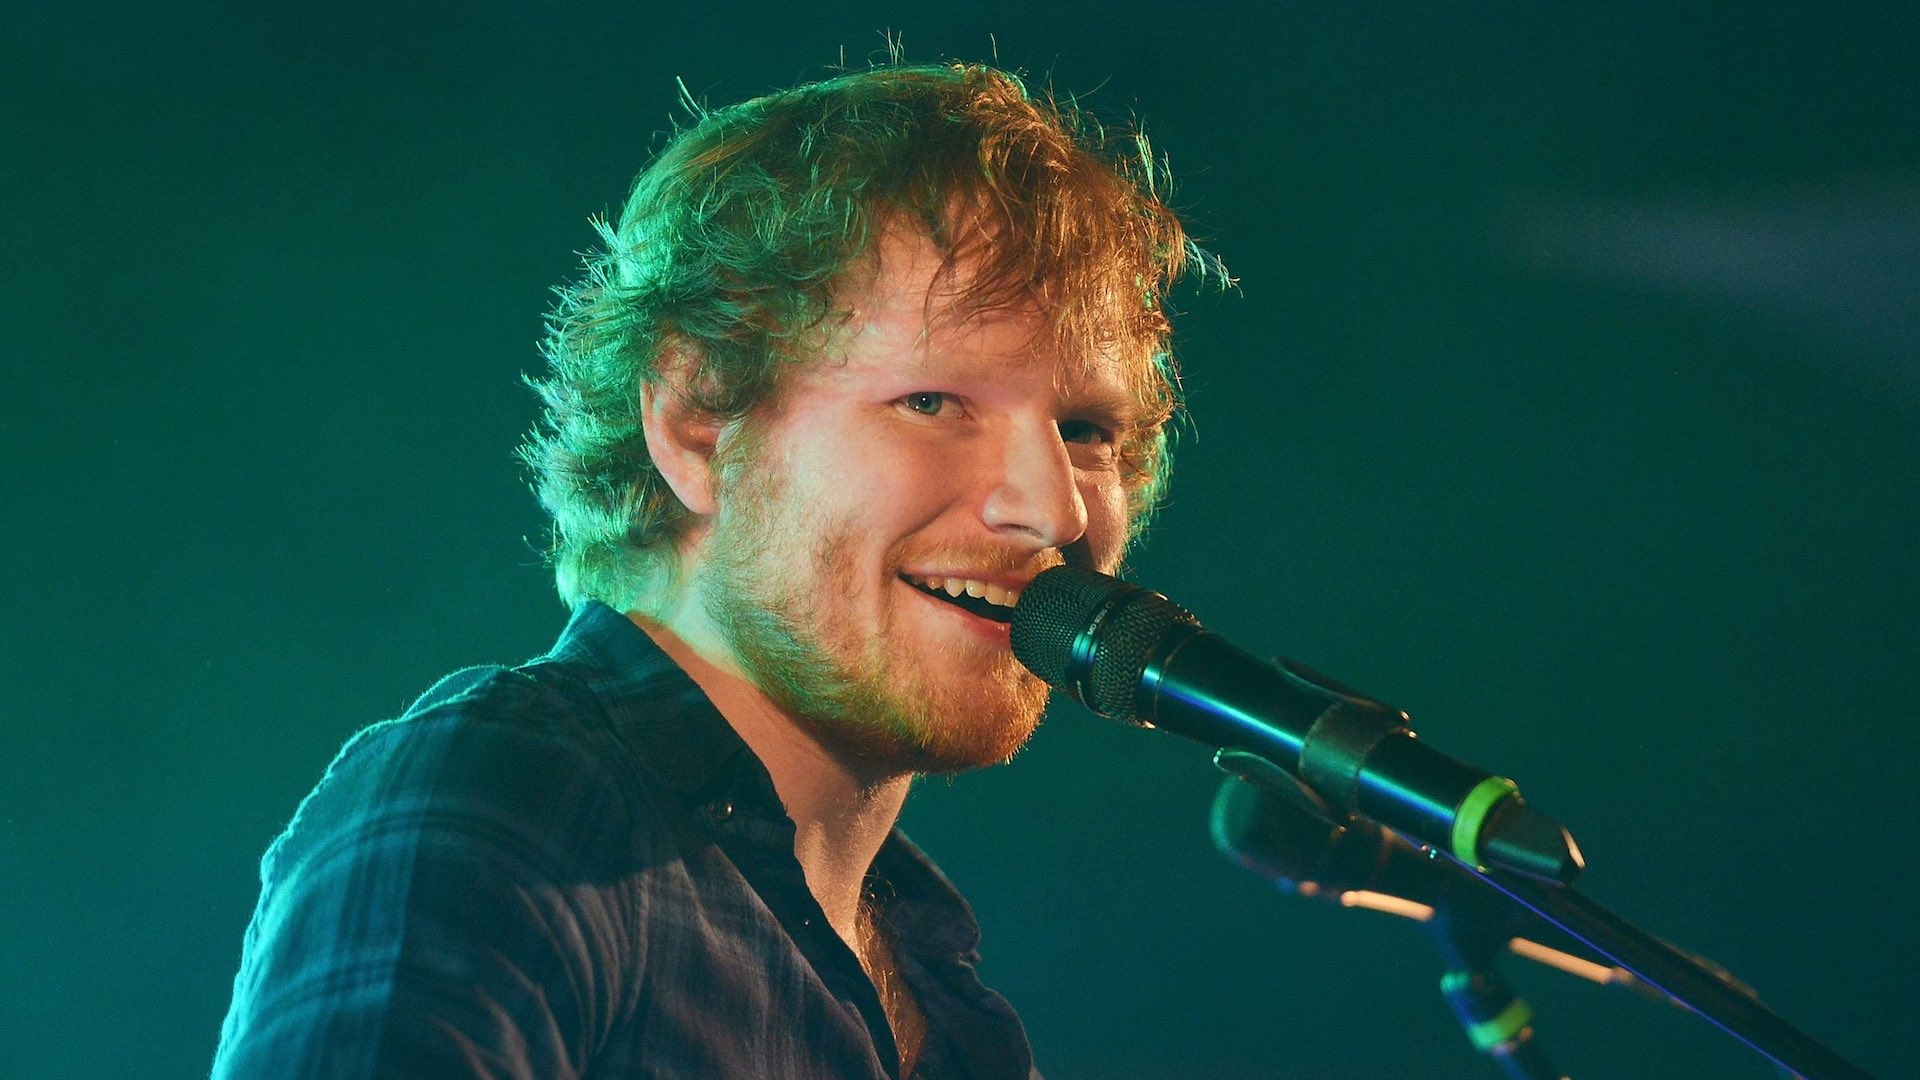 Ed Sheeran anuncia fecha de estreno de su nuevo álbum, = (Equals)